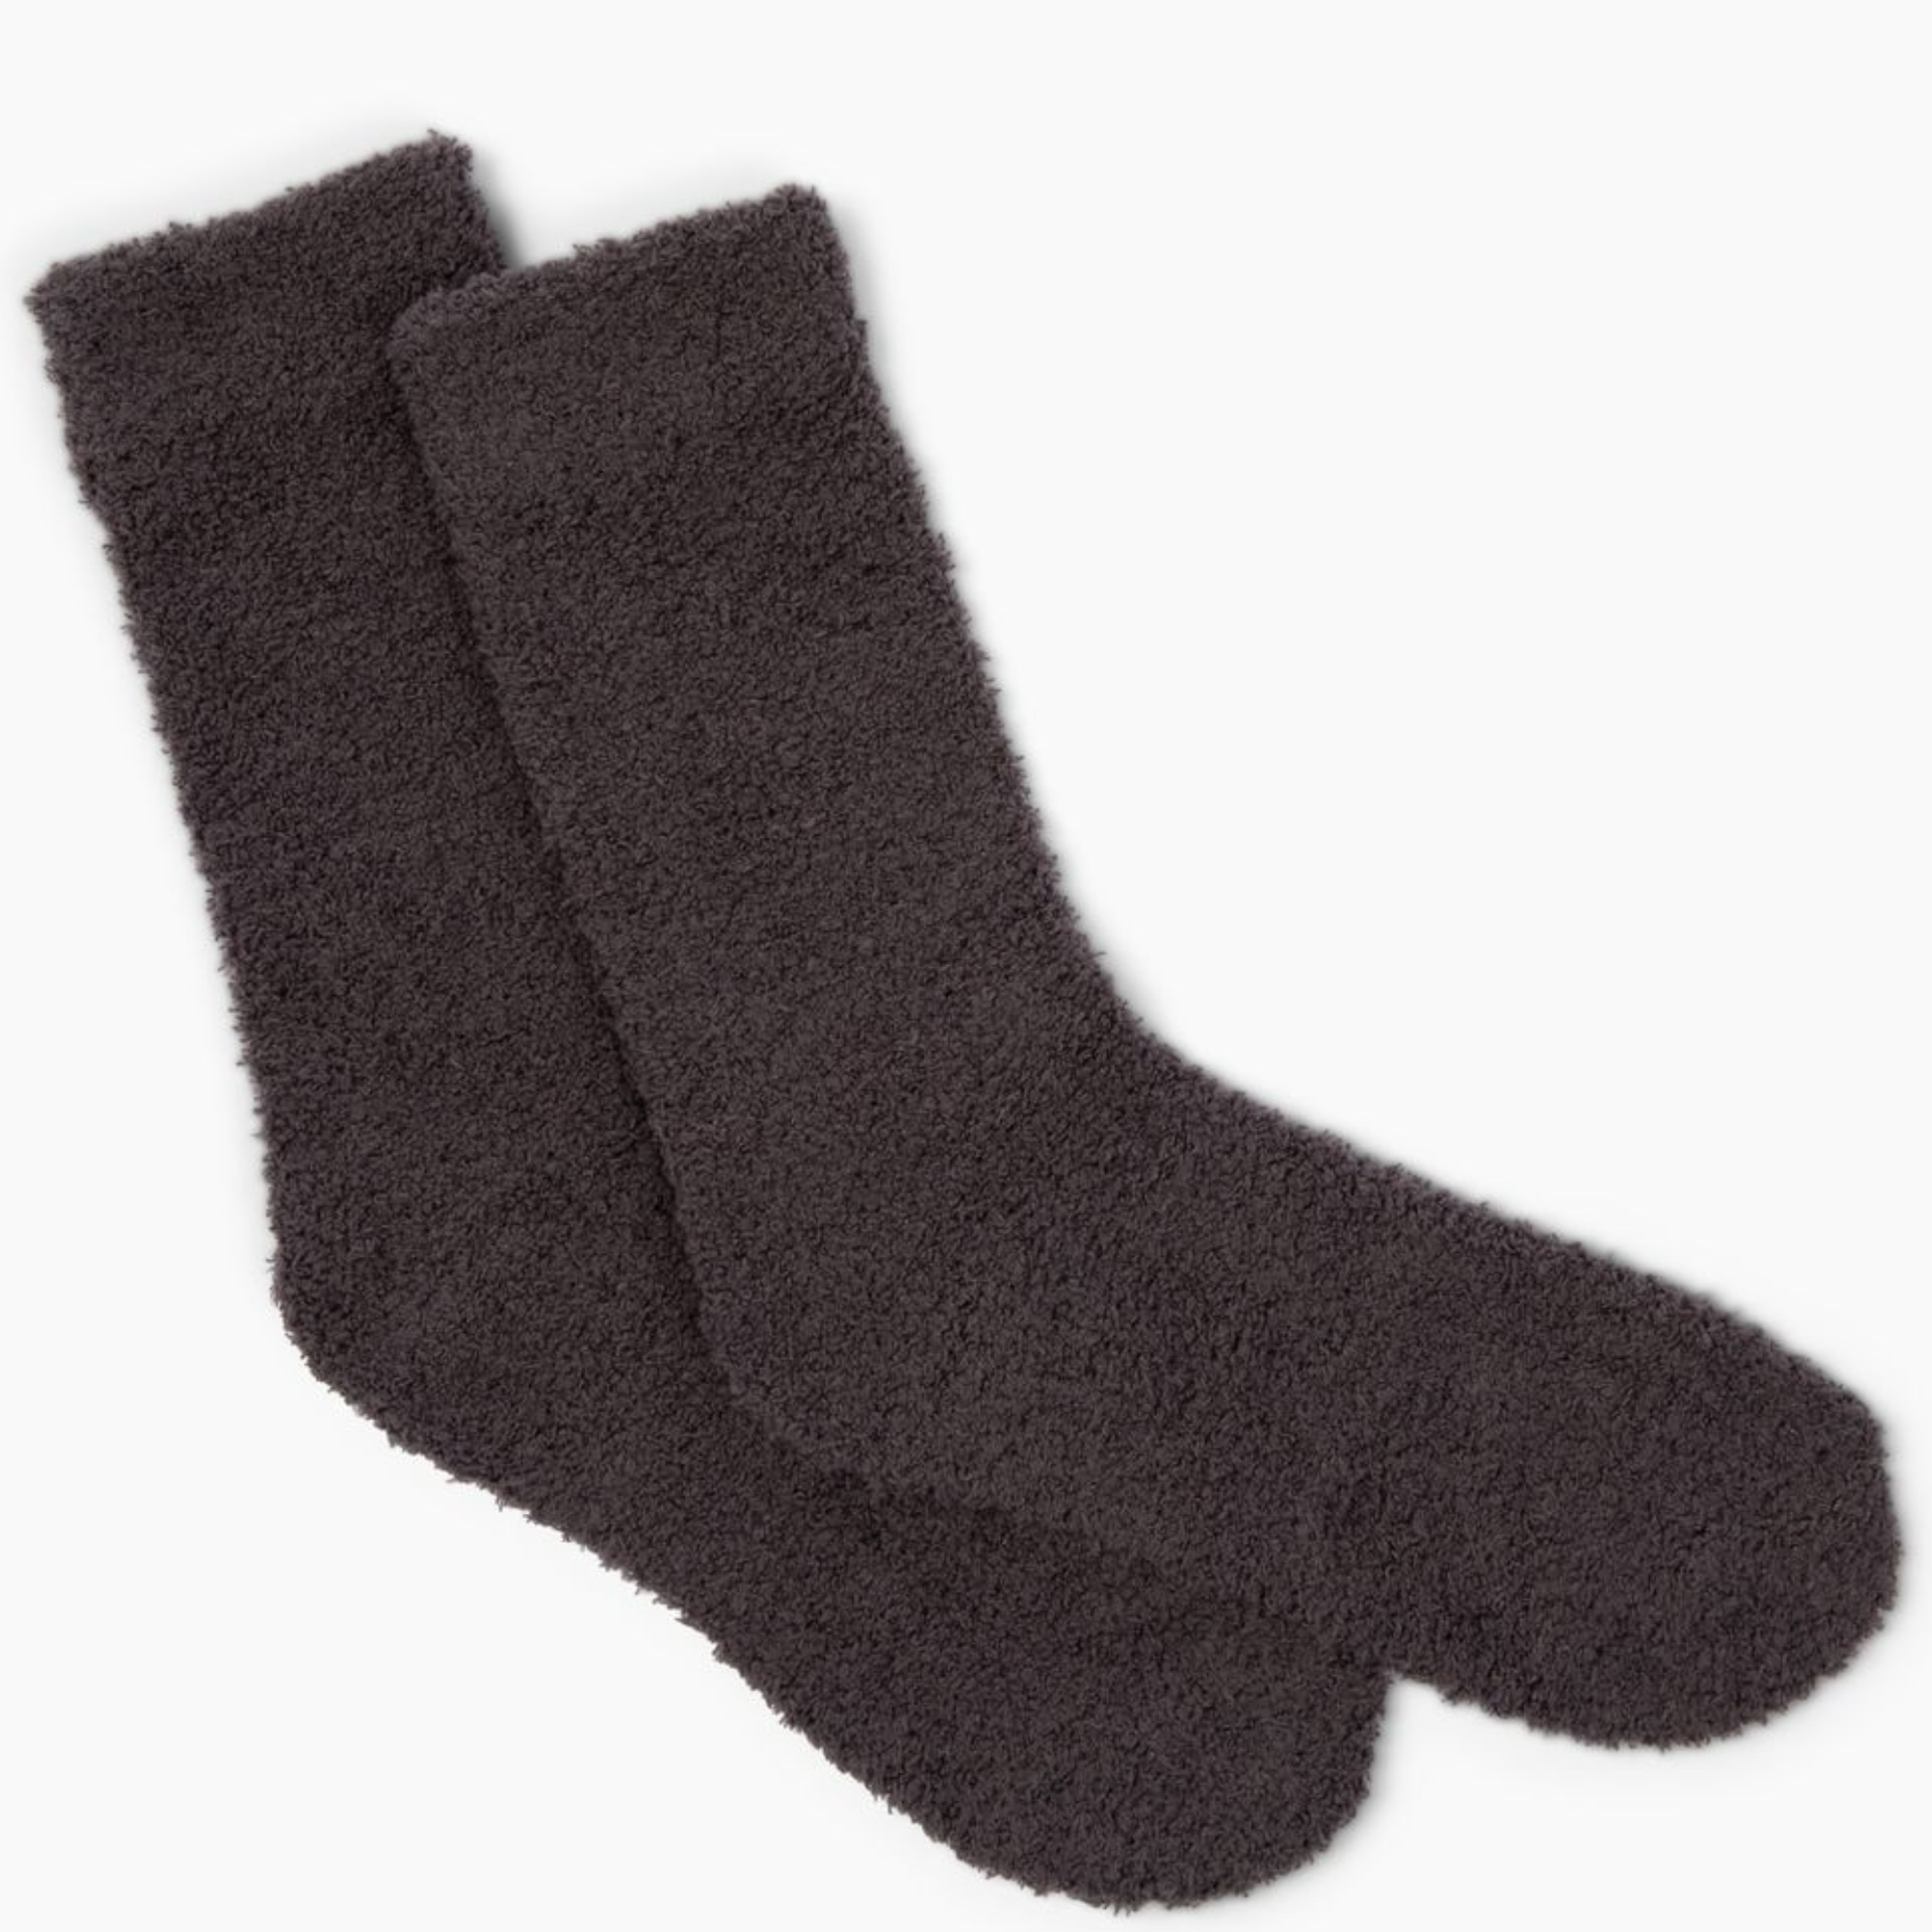 Cozy Cloud Socks - Charcoal Fall-Winter Giften Market